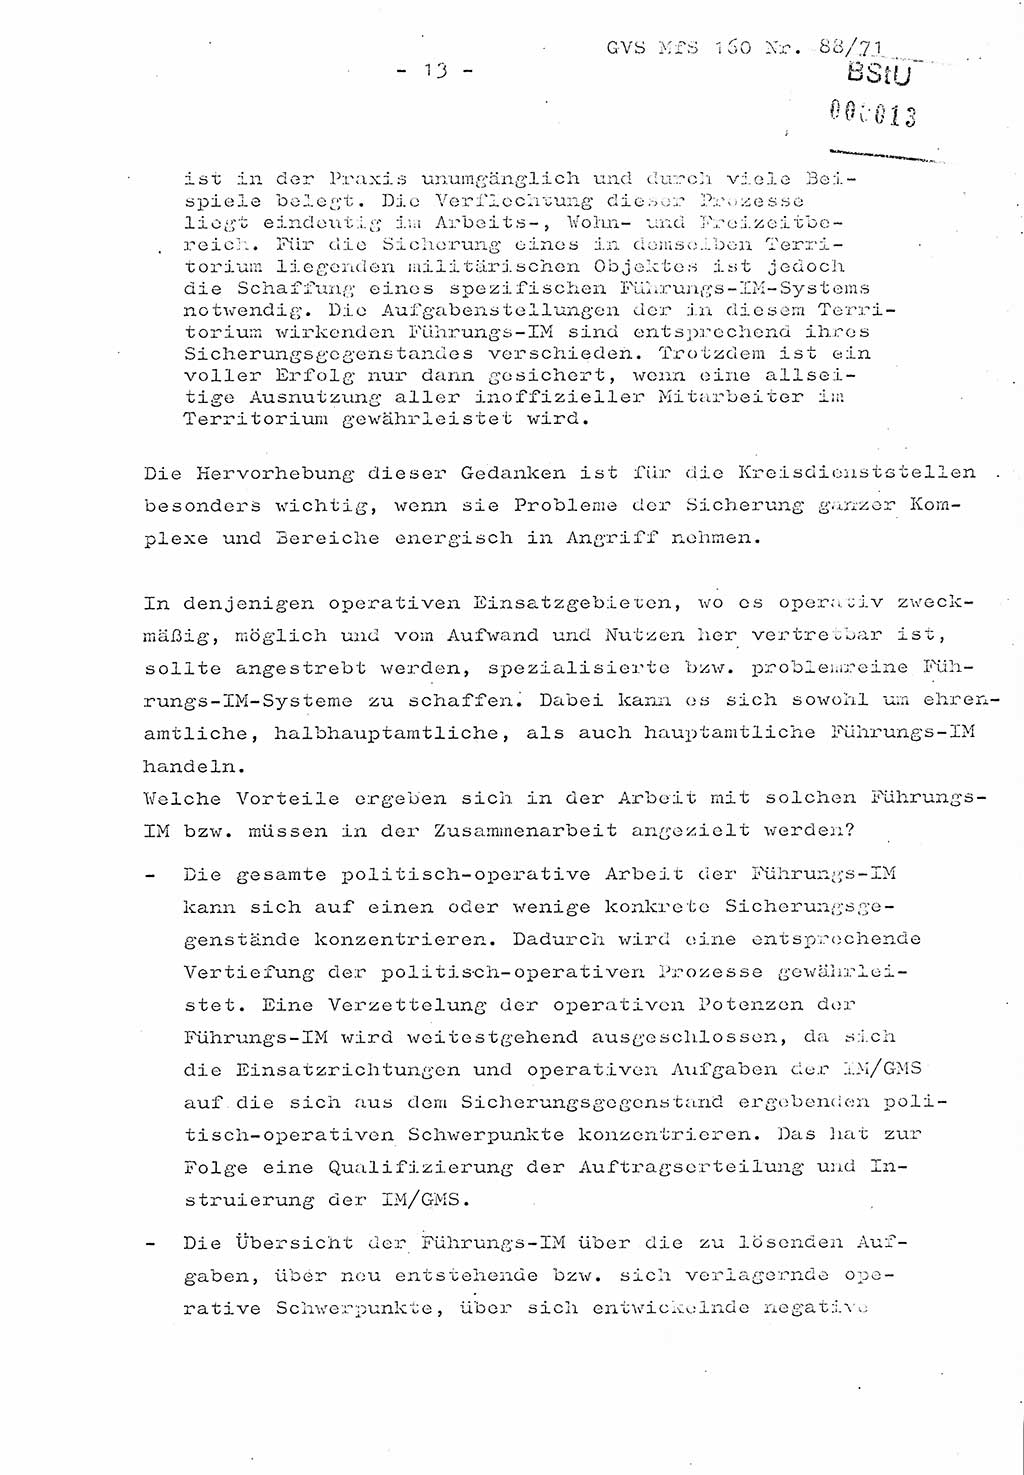 Dissertation Oberstleutnant Josef Schwarz (BV Schwerin), Major Fritz Amm (JHS), Hauptmann Peter Gräßler (JHS), Ministerium für Staatssicherheit (MfS) [Deutsche Demokratische Republik (DDR)], Juristische Hochschule (JHS), Geheime Verschlußsache (GVS) 160-88/71, Potsdam 1972, Seite 13 (Diss. MfS DDR JHS GVS 160-88/71 1972, S. 13)